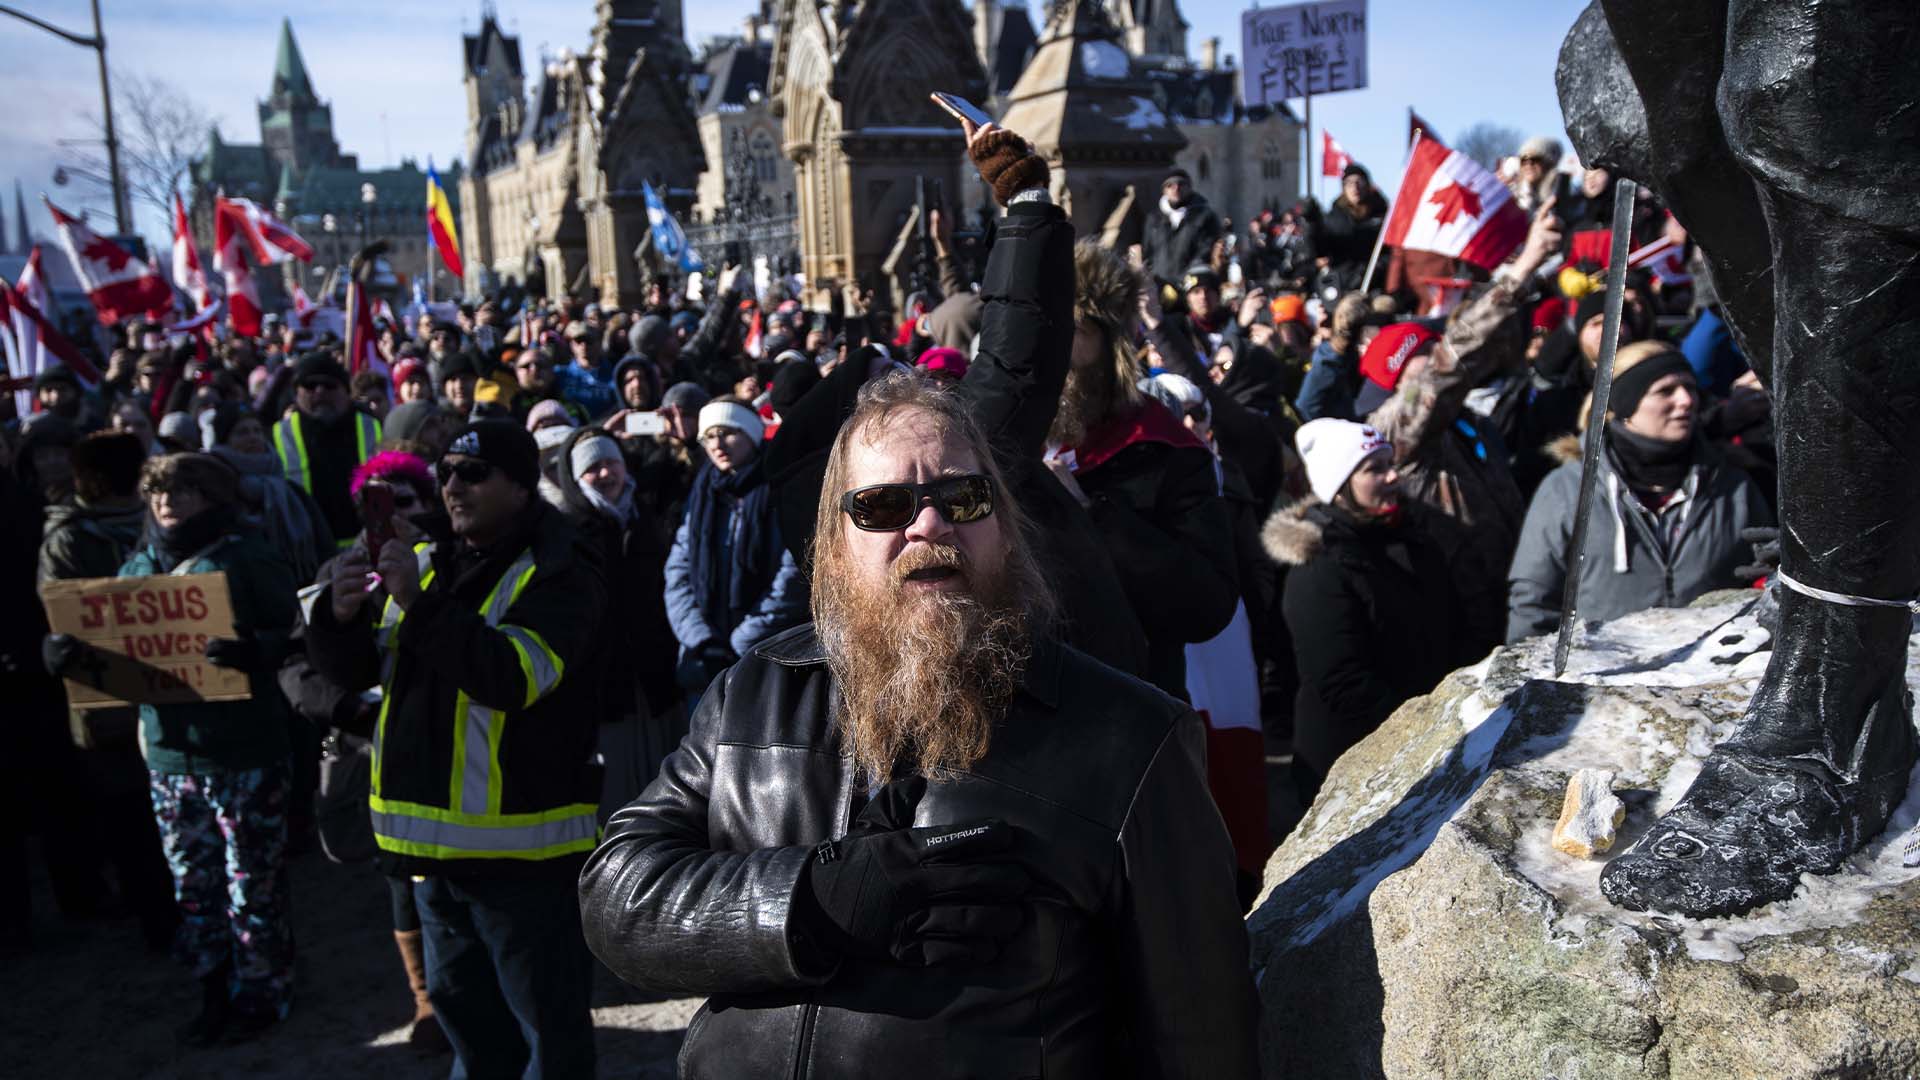 Rassemblement contre les restrictions liées à la COVID-19 sur la Colline du Parlement. Le rassemblement a commencé par un convoi à travers le pays protestant contre un mandat fédéral de vaccination pour les camionneurs, à Ottawa le dimanche 30 janvier 2022.